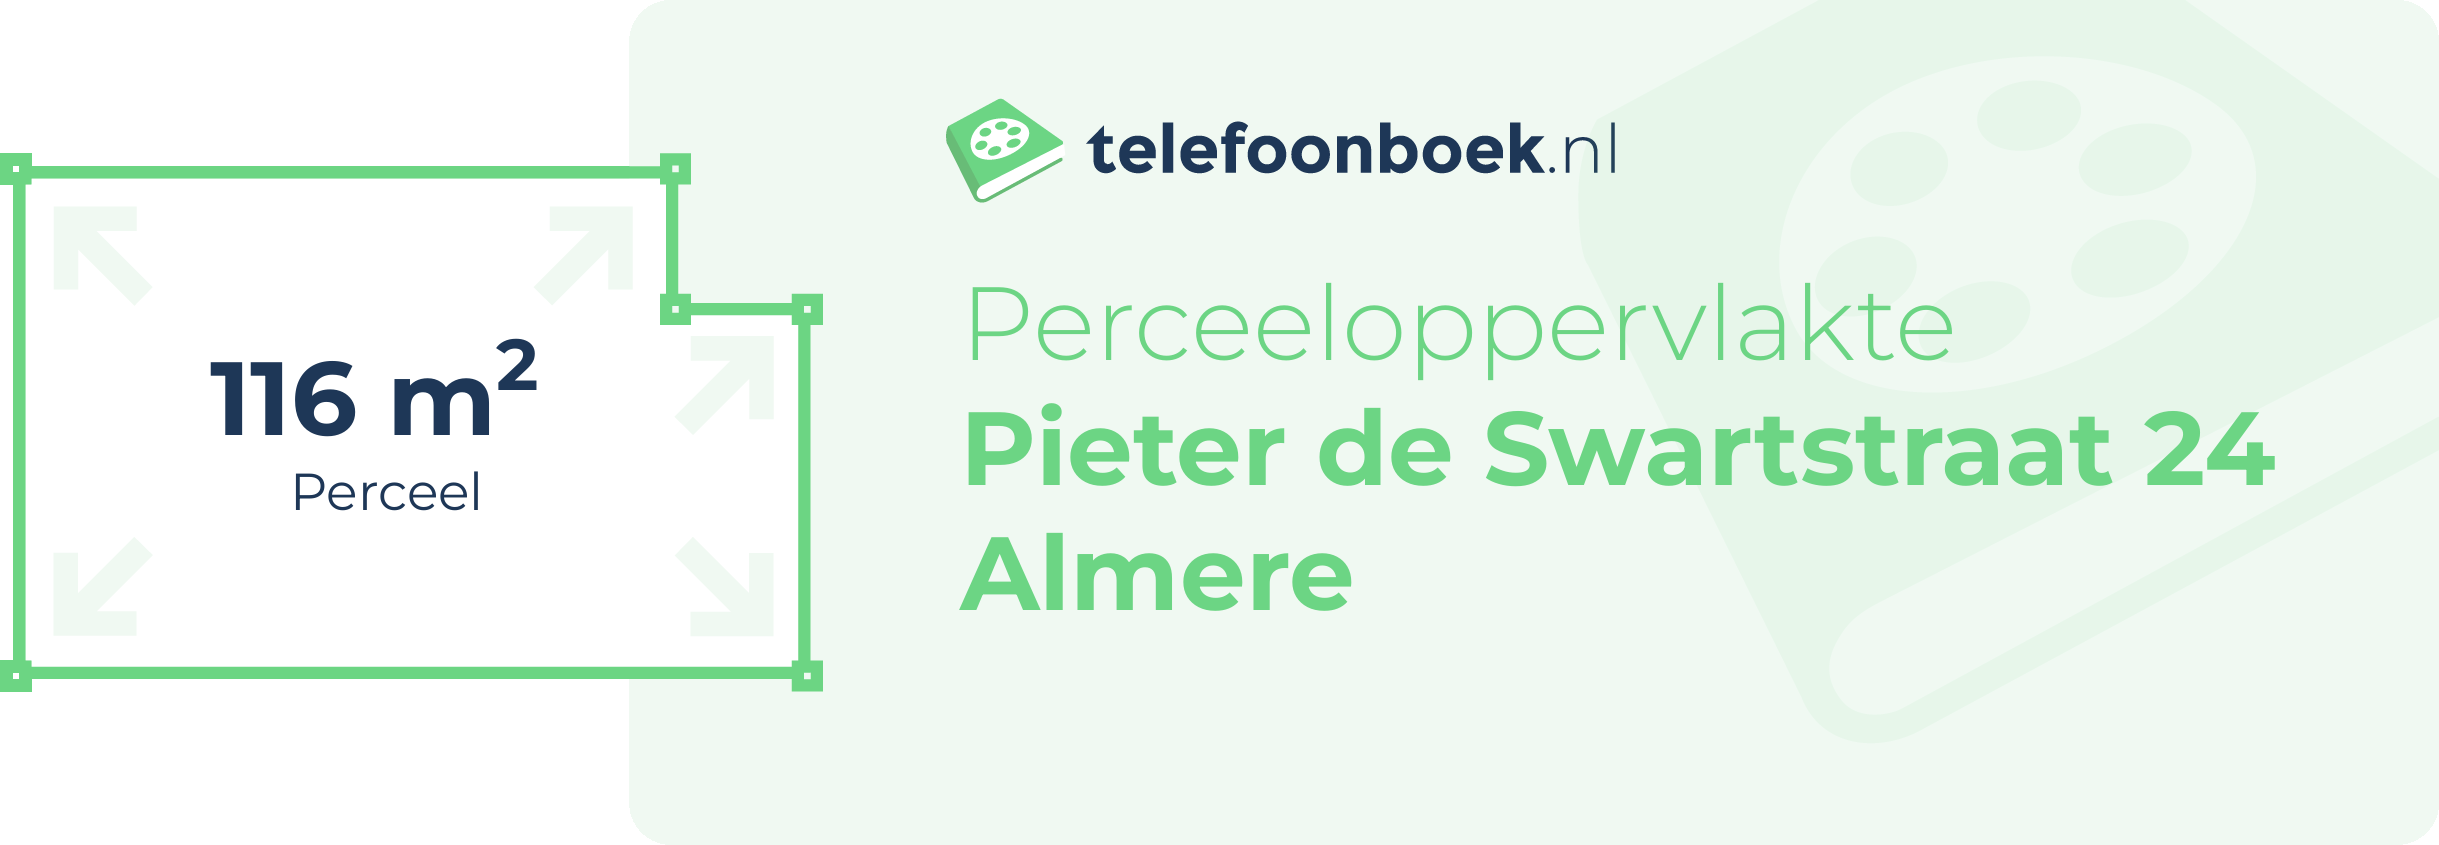 Perceeloppervlakte Pieter De Swartstraat 24 Almere